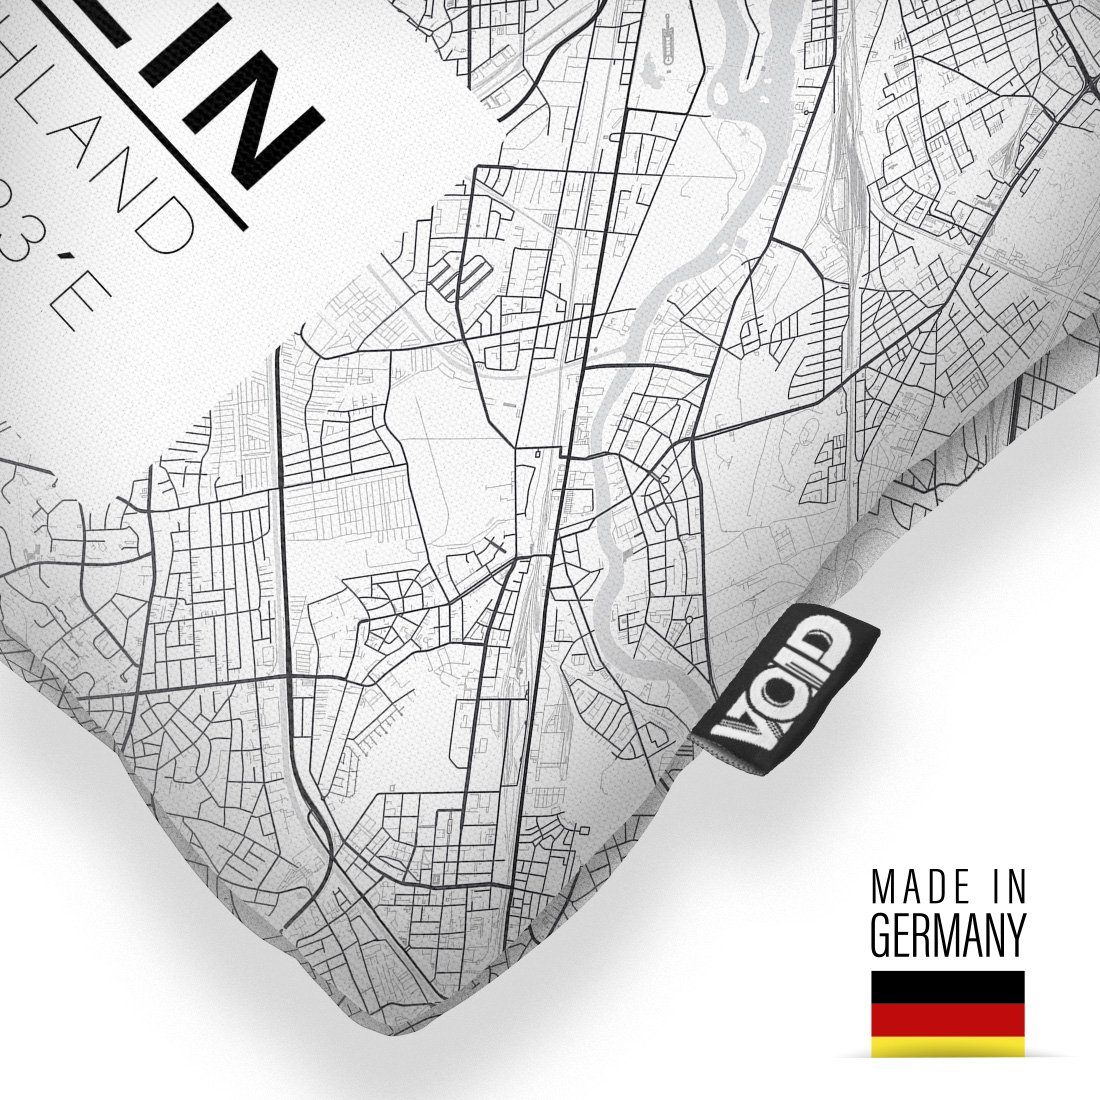 Berliner (1 VOID Stück), Reichstag Bär Hauptstadt Deutschland Karte Kissenbezug, Stadt-Plan